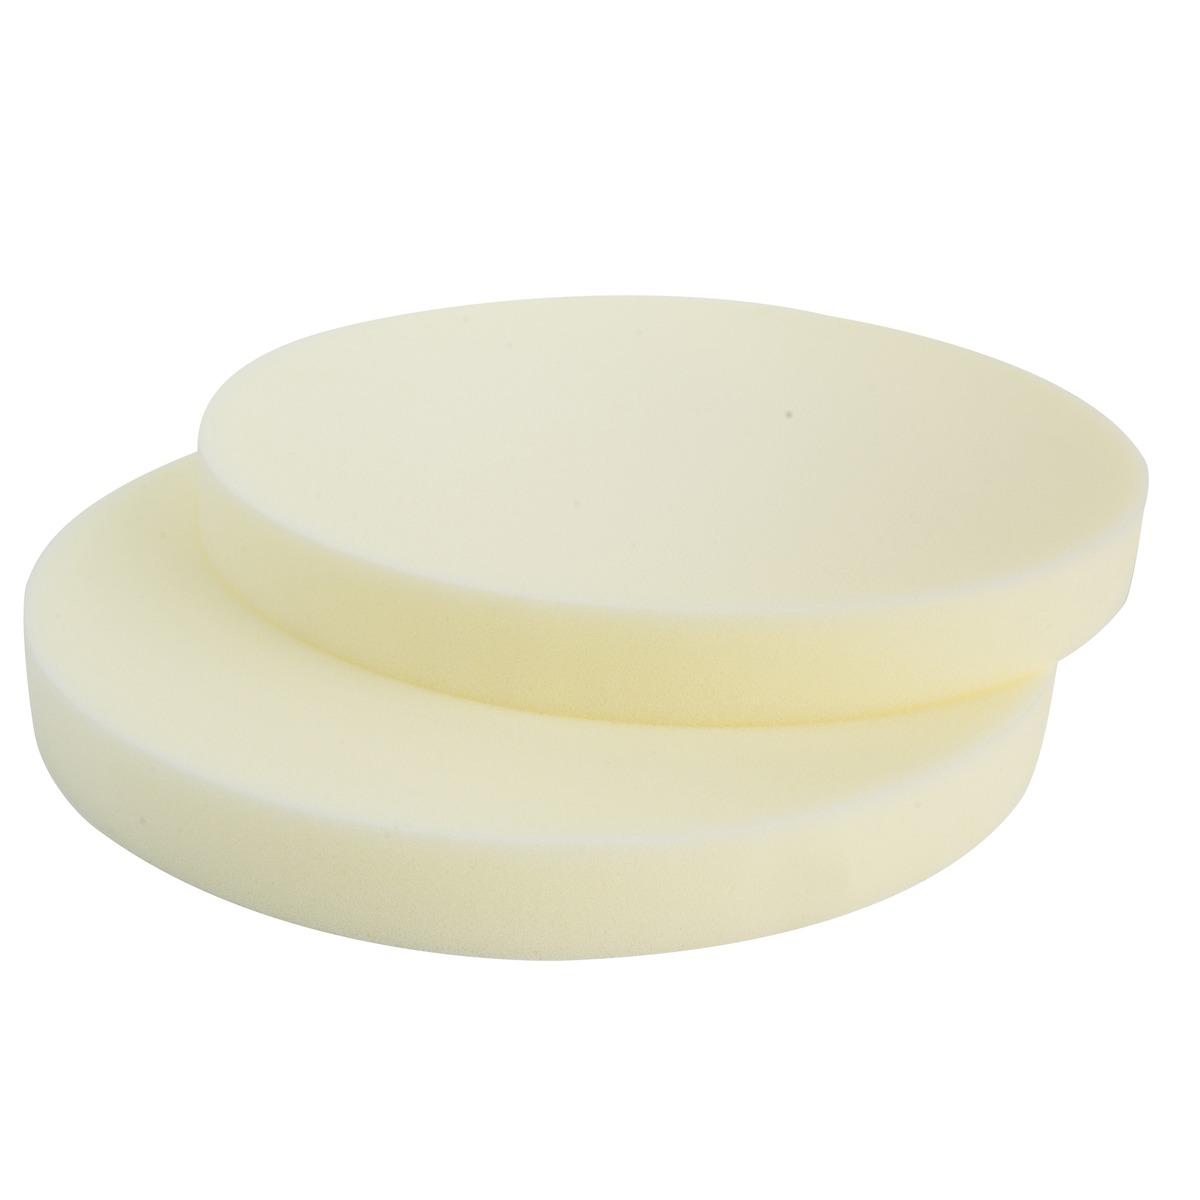 Les 2 galettes rondes pour confection - Mousse polyéther - Diamètre 38 cm - Blanc